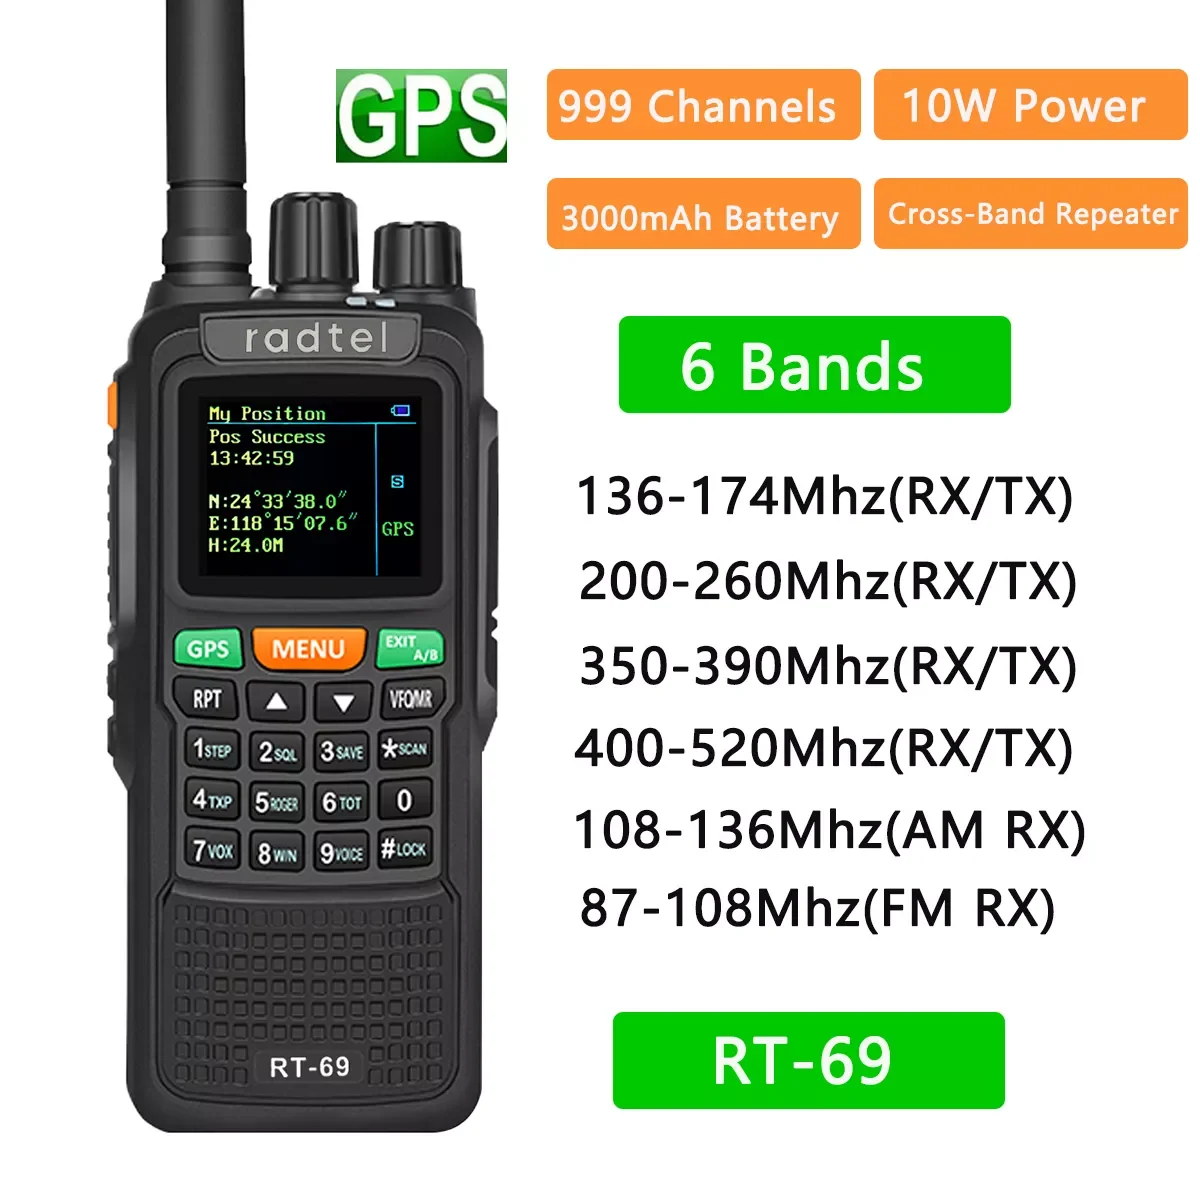 

RT-69 GPS 10 Вт 6 диапазонов Любительская двухсторонняя радиостанция 999CH Air Band Walkie Talkie SOS цветной ЖК-дисплей полицейский сканер авиационная лента